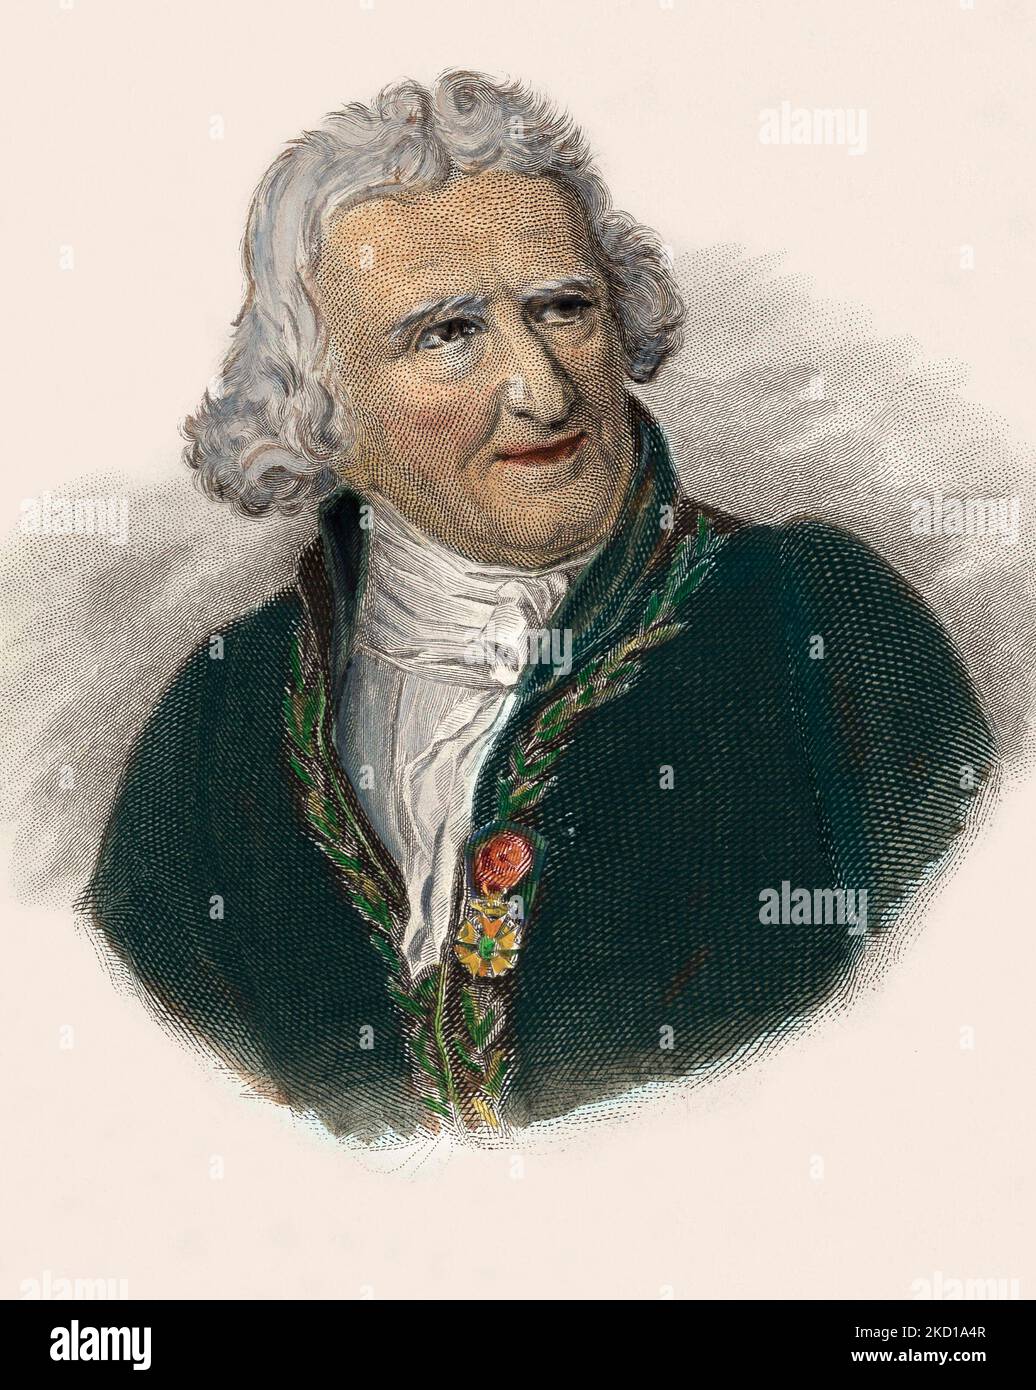 Baron Antoine Augustin Parmentier (1737-1813), pharmacien, dieteticien et agronome francais. 1833 Stock Photo